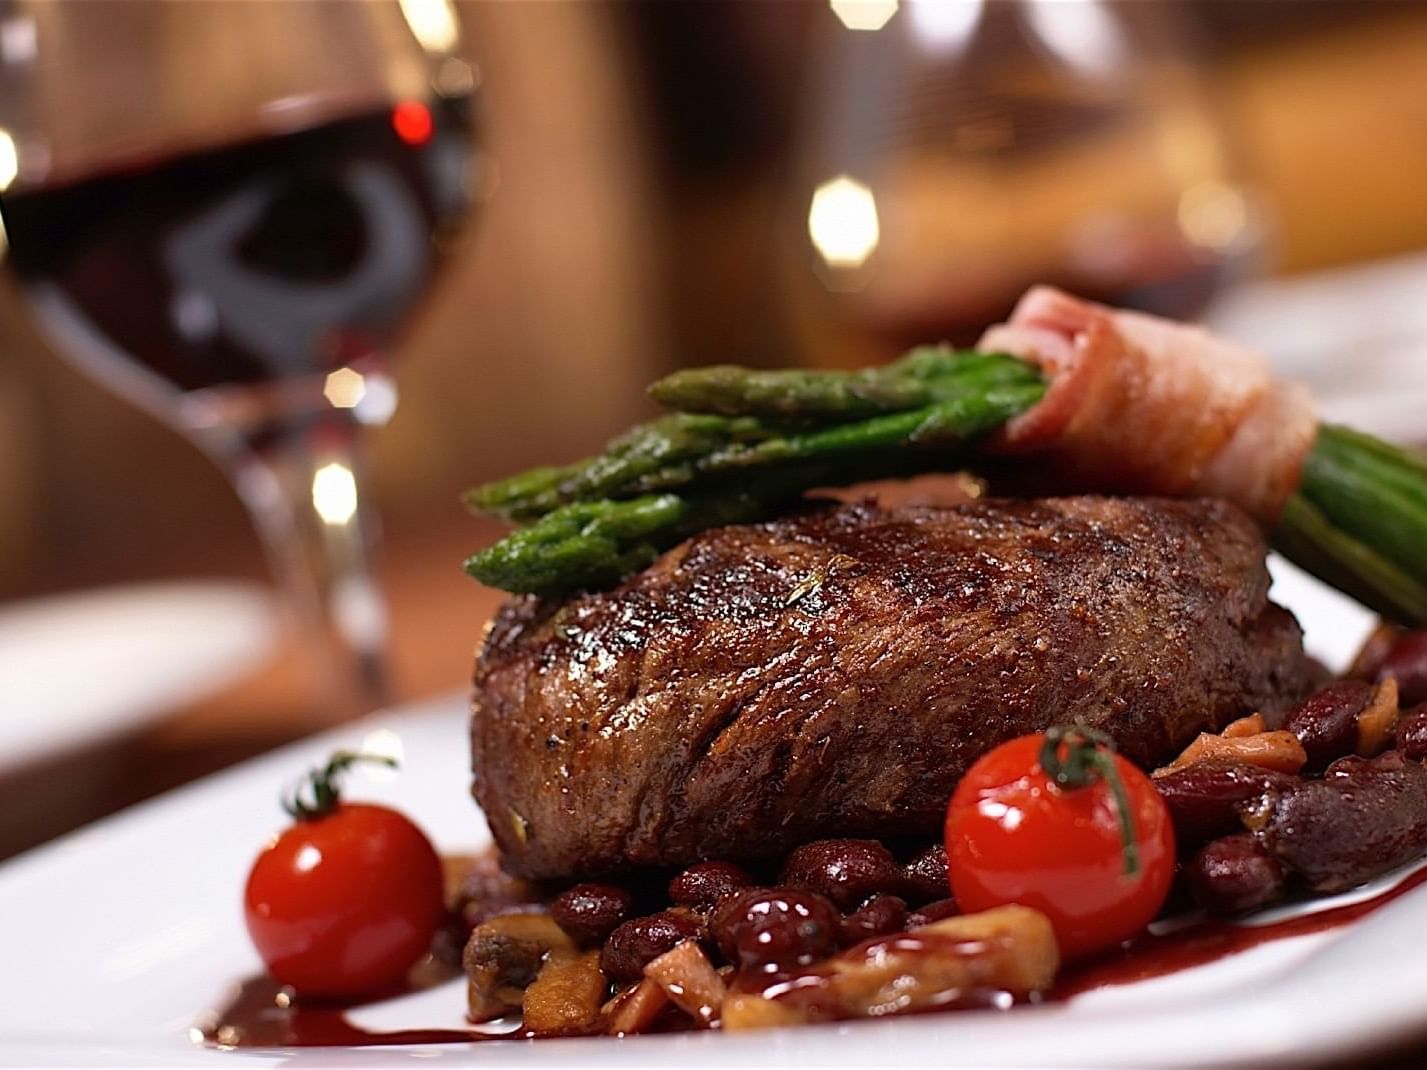 Steak, mushrooms & red wine served at Best Western Premier